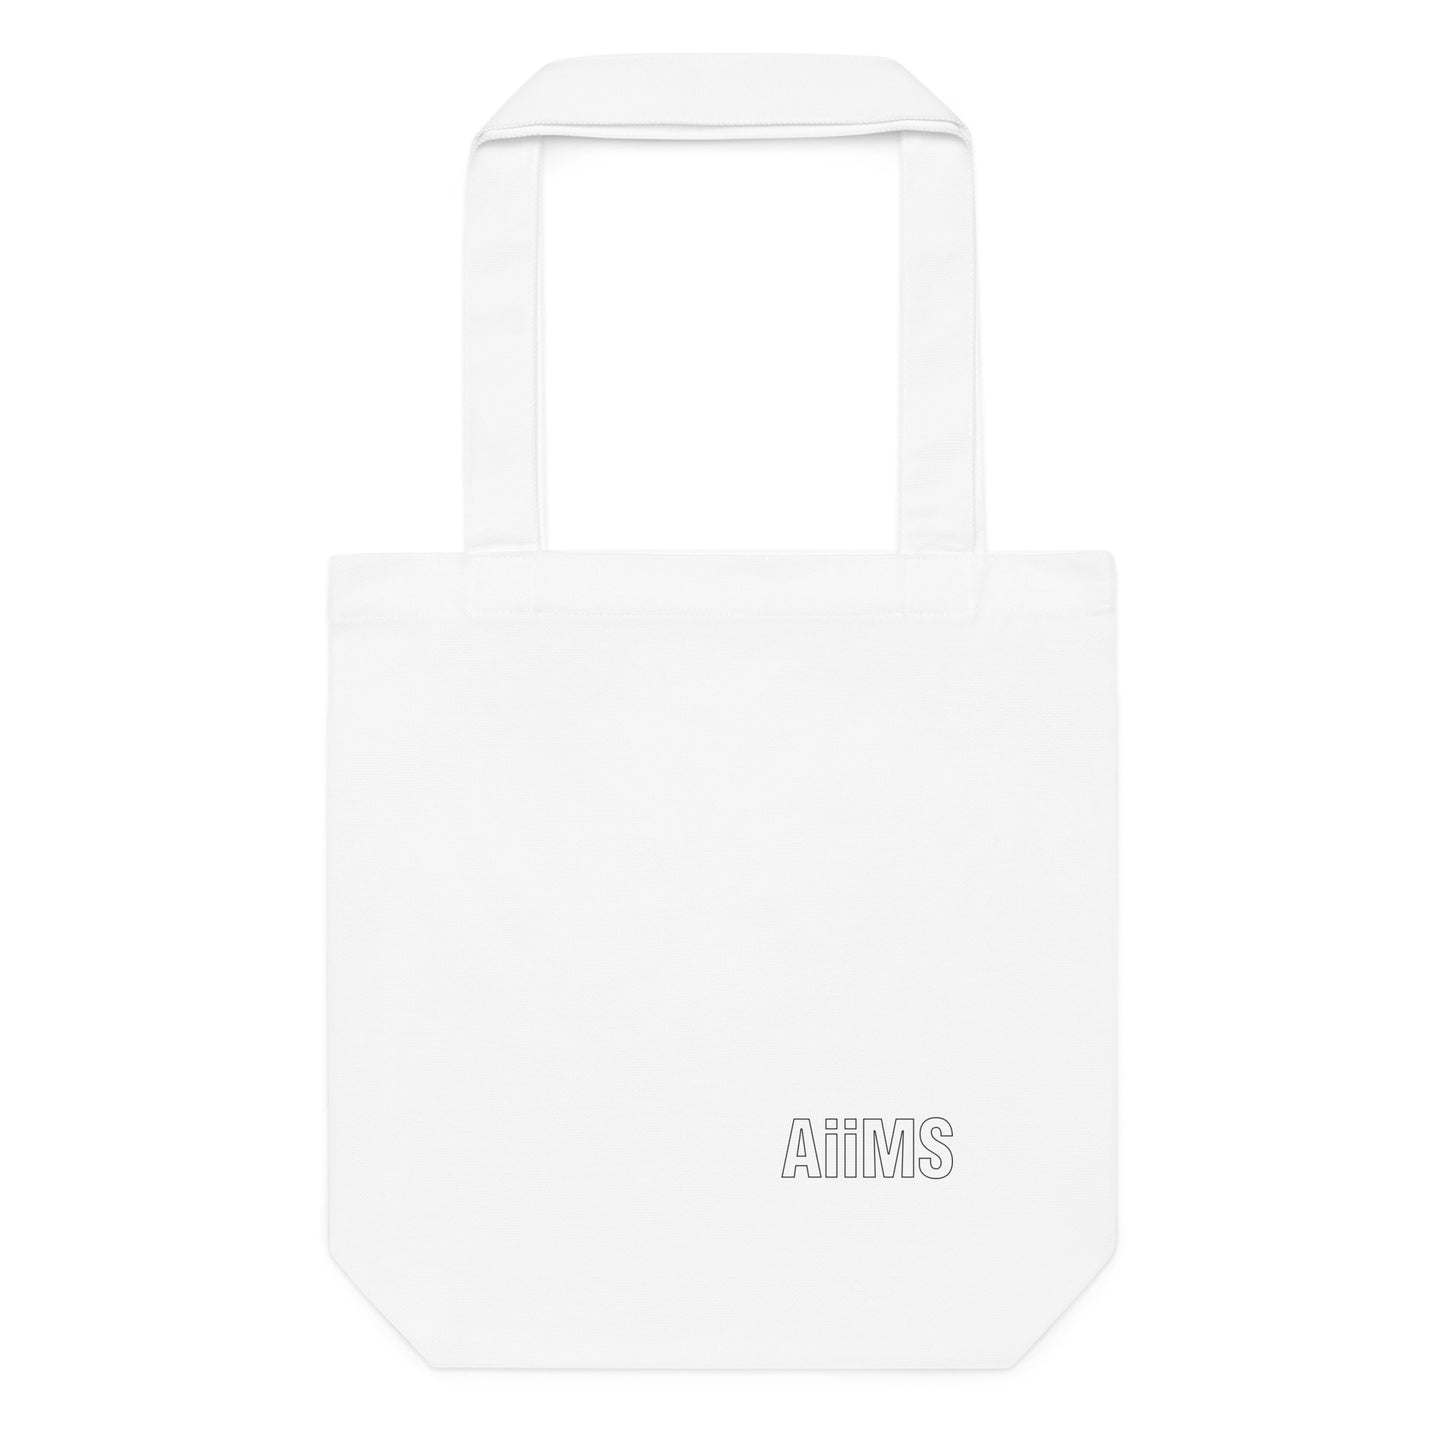 AIIMS Custom tote bag